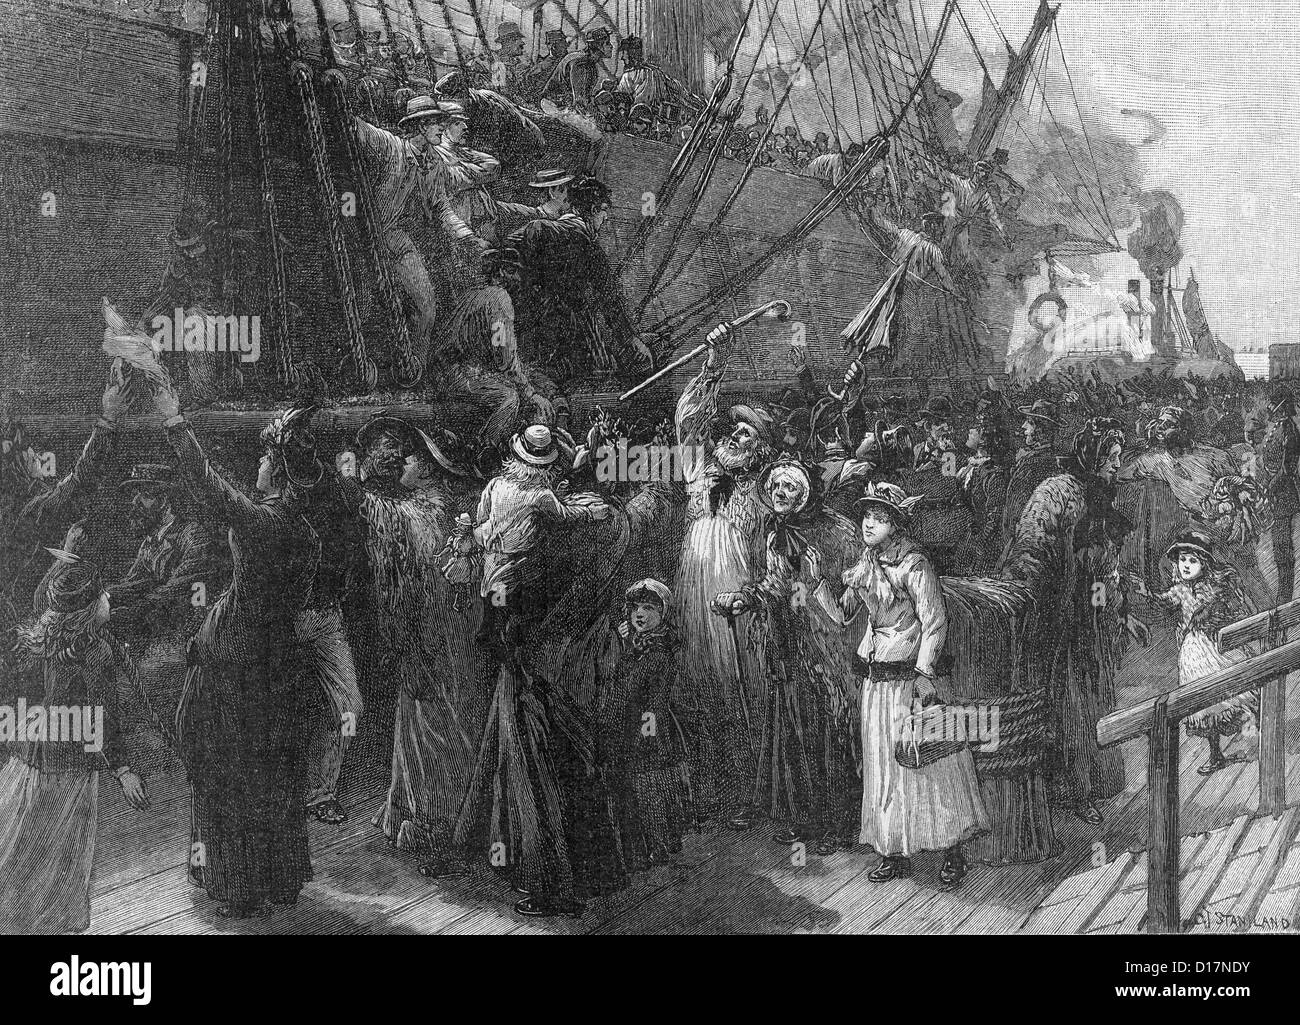 EMMIGRATION de dire au revoir à expédier plein de émigrants à l'Australie à partir d'un port anglais vers 1860 Banque D'Images